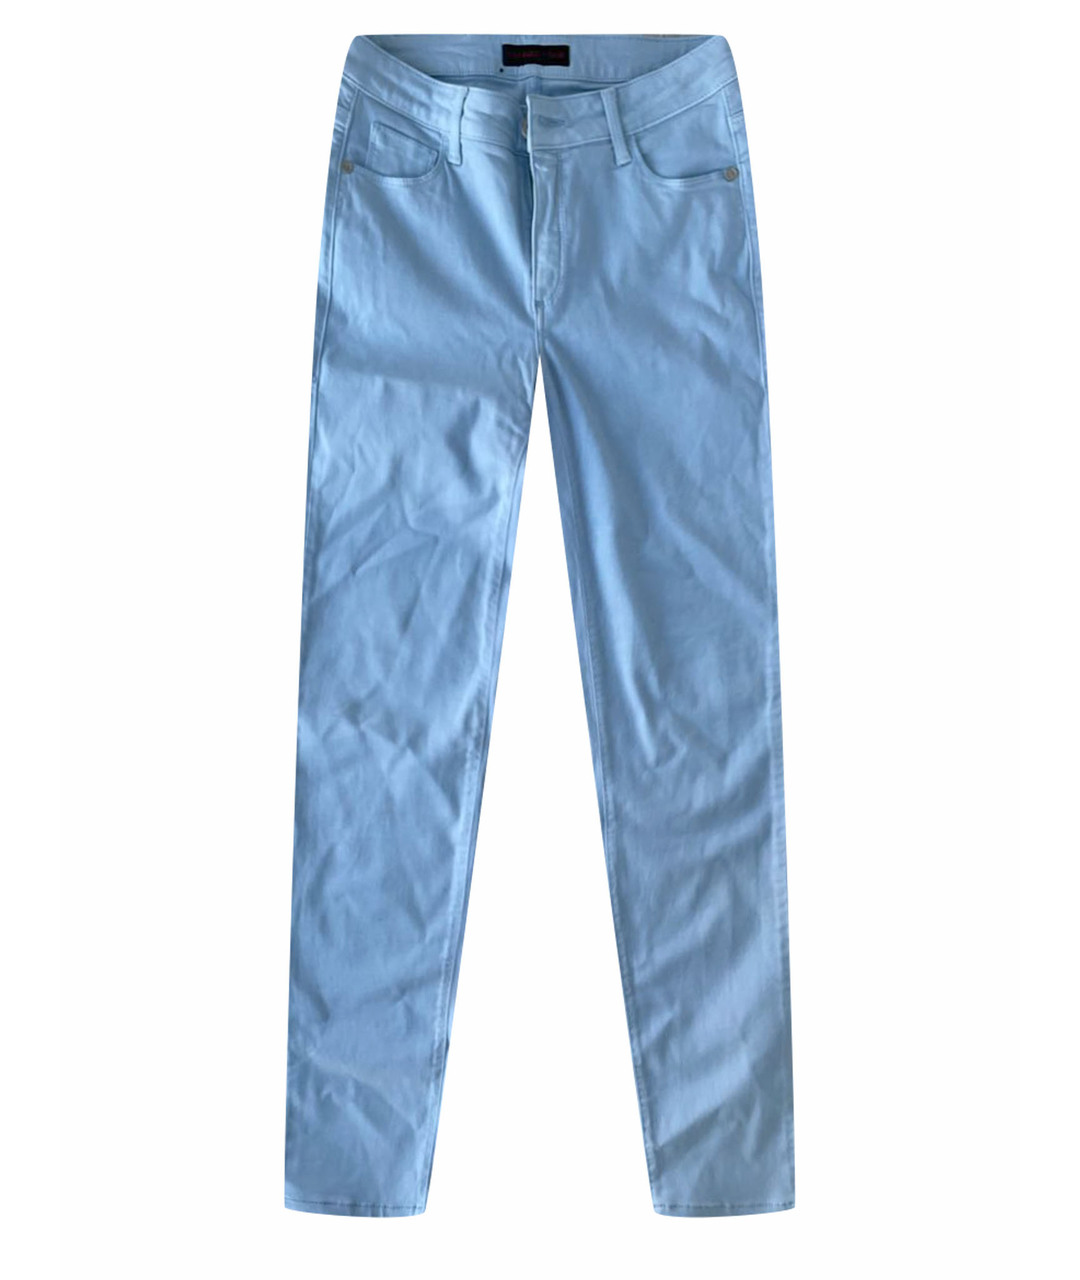 TRUSSARDI JEANS Голубые джинсы слим, фото 1